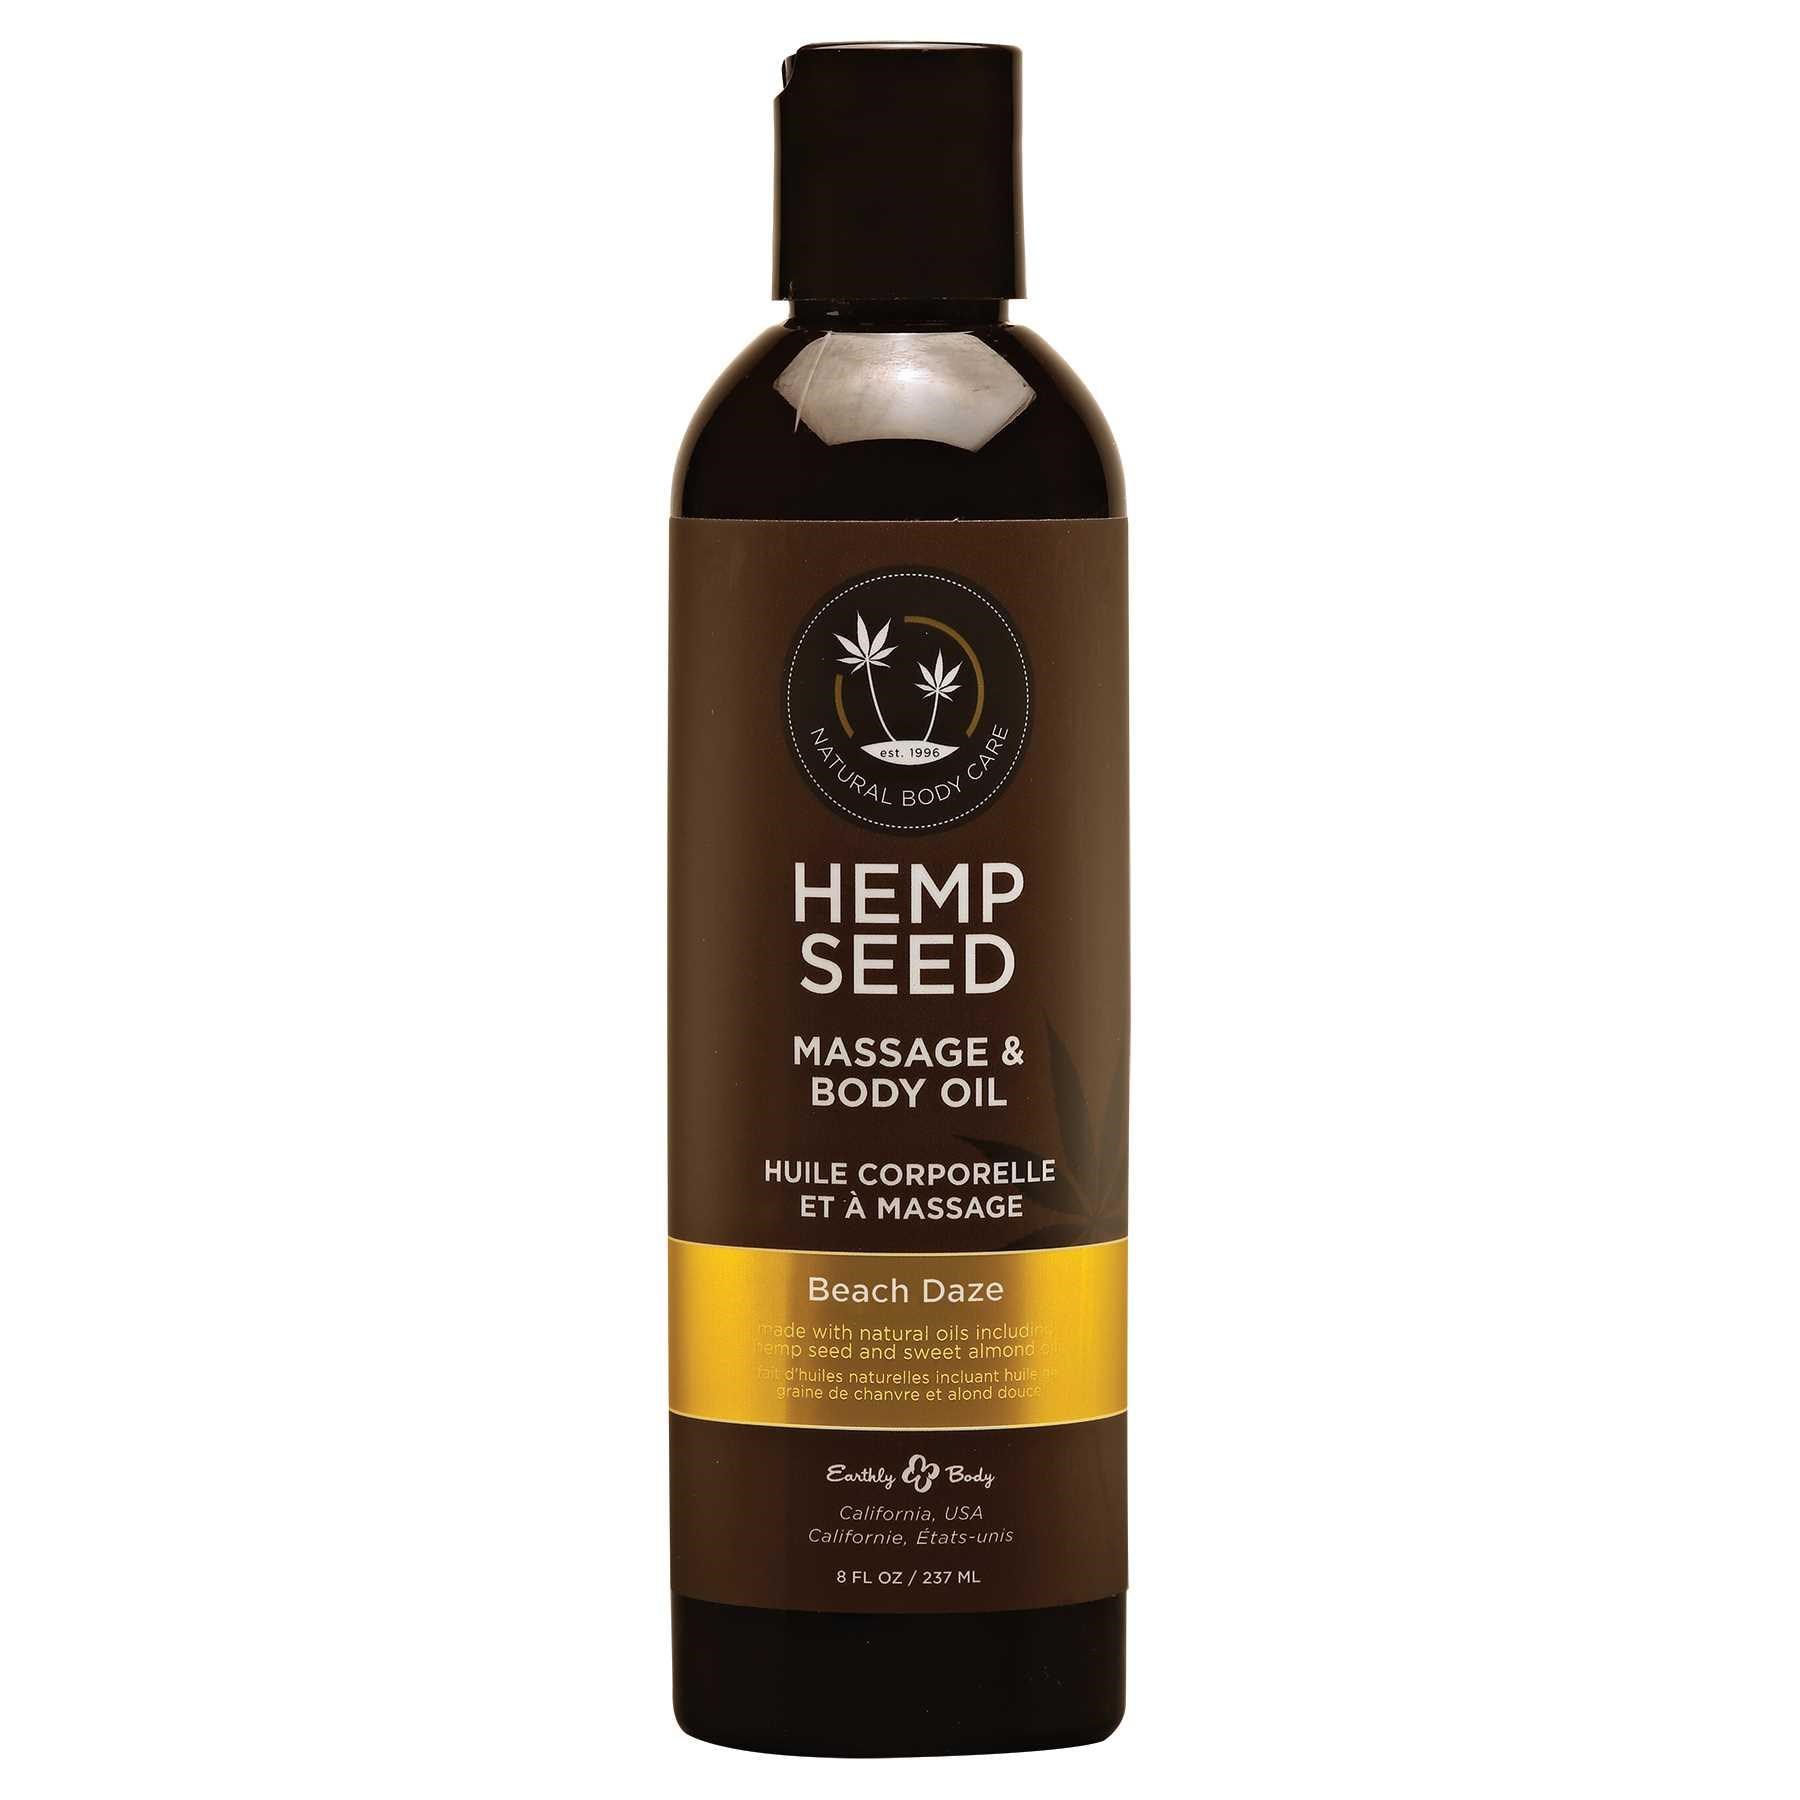 D957 hemp seed massage oil front of bottle